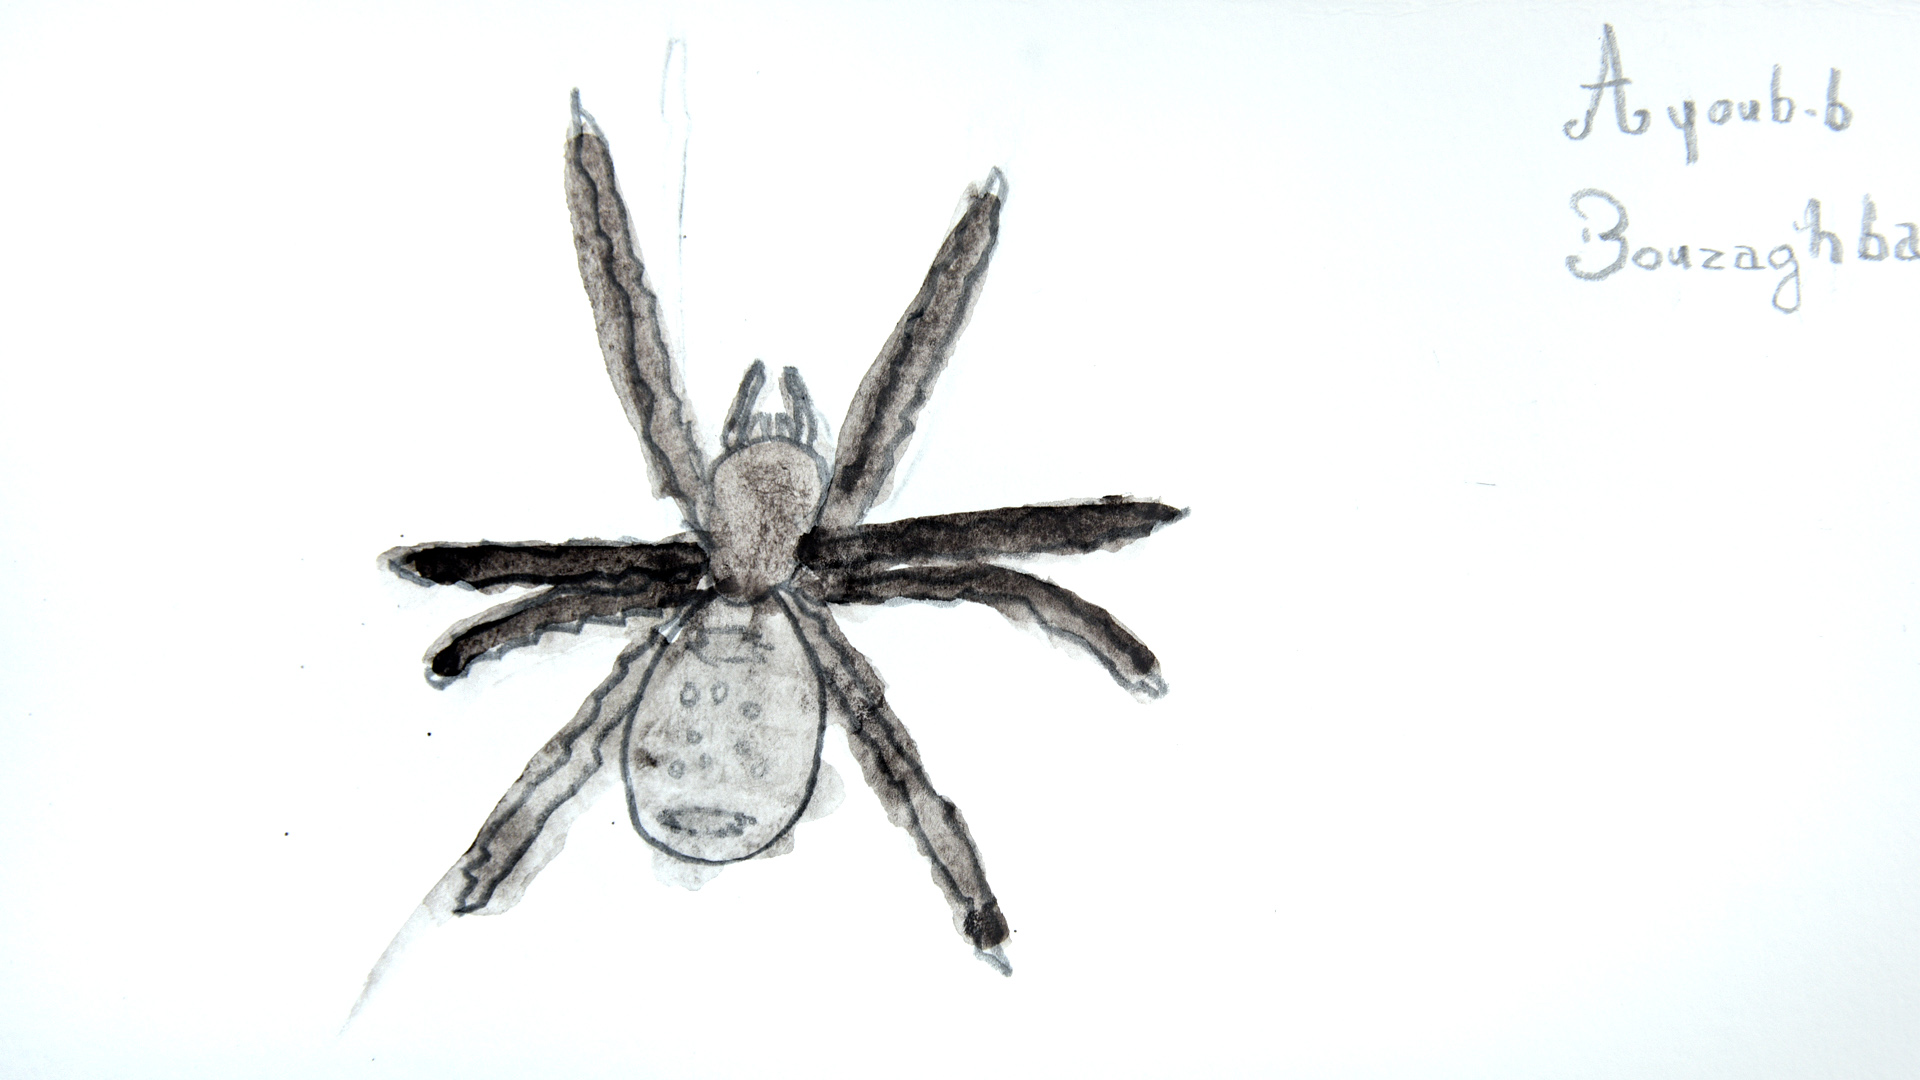 Troisième dessin d'une araignée